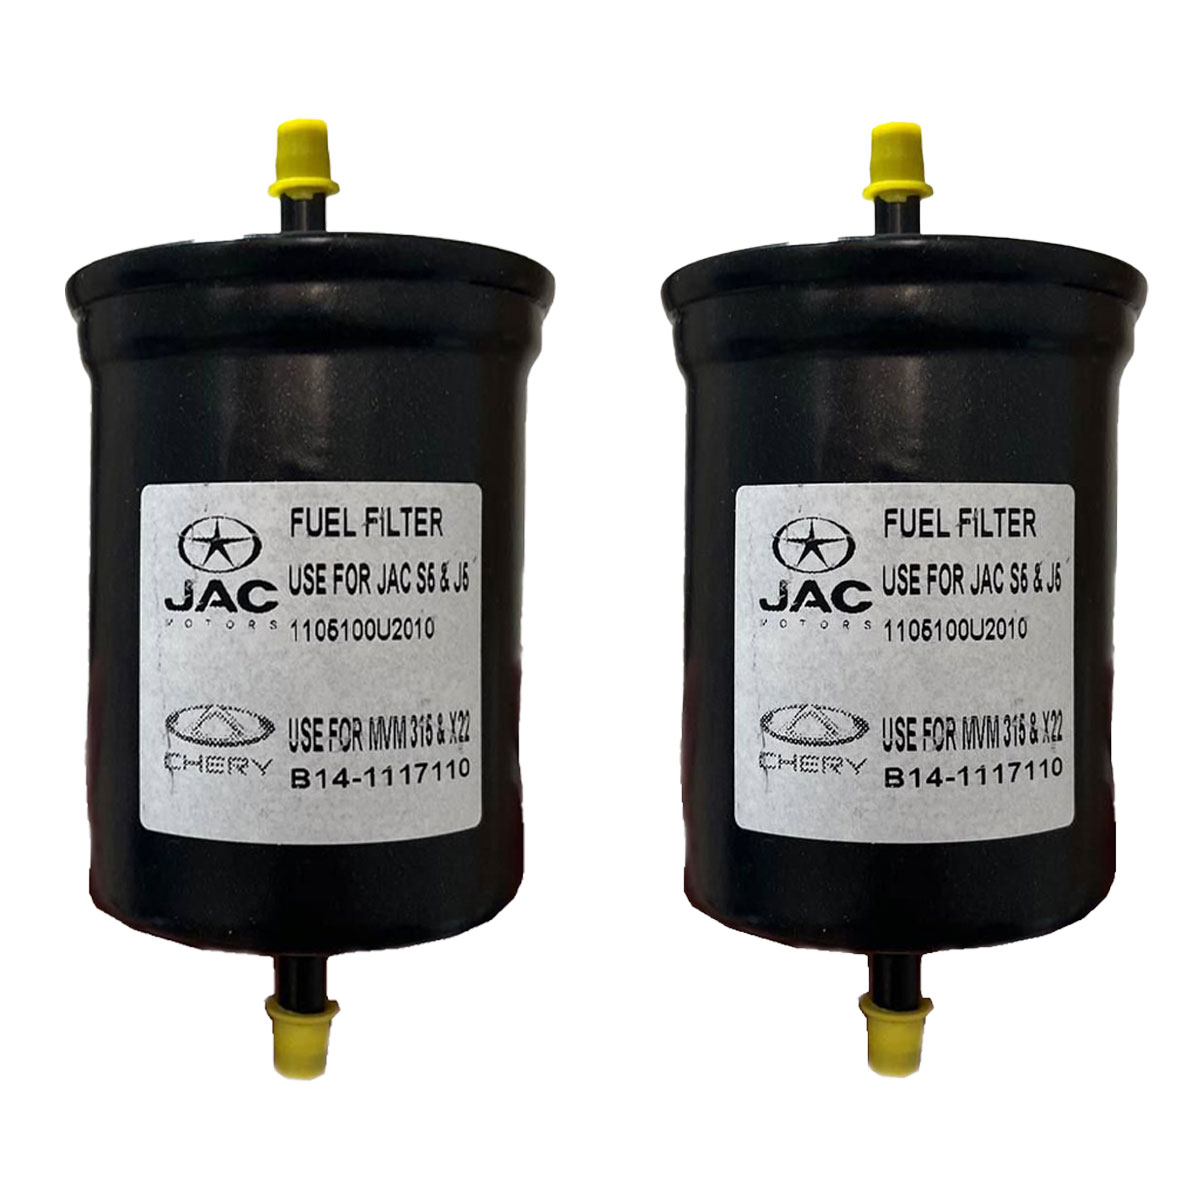 فیلتر بنزین مدل پرفلوکس B-14 مناسب برای جک J5 بسته دو عددی